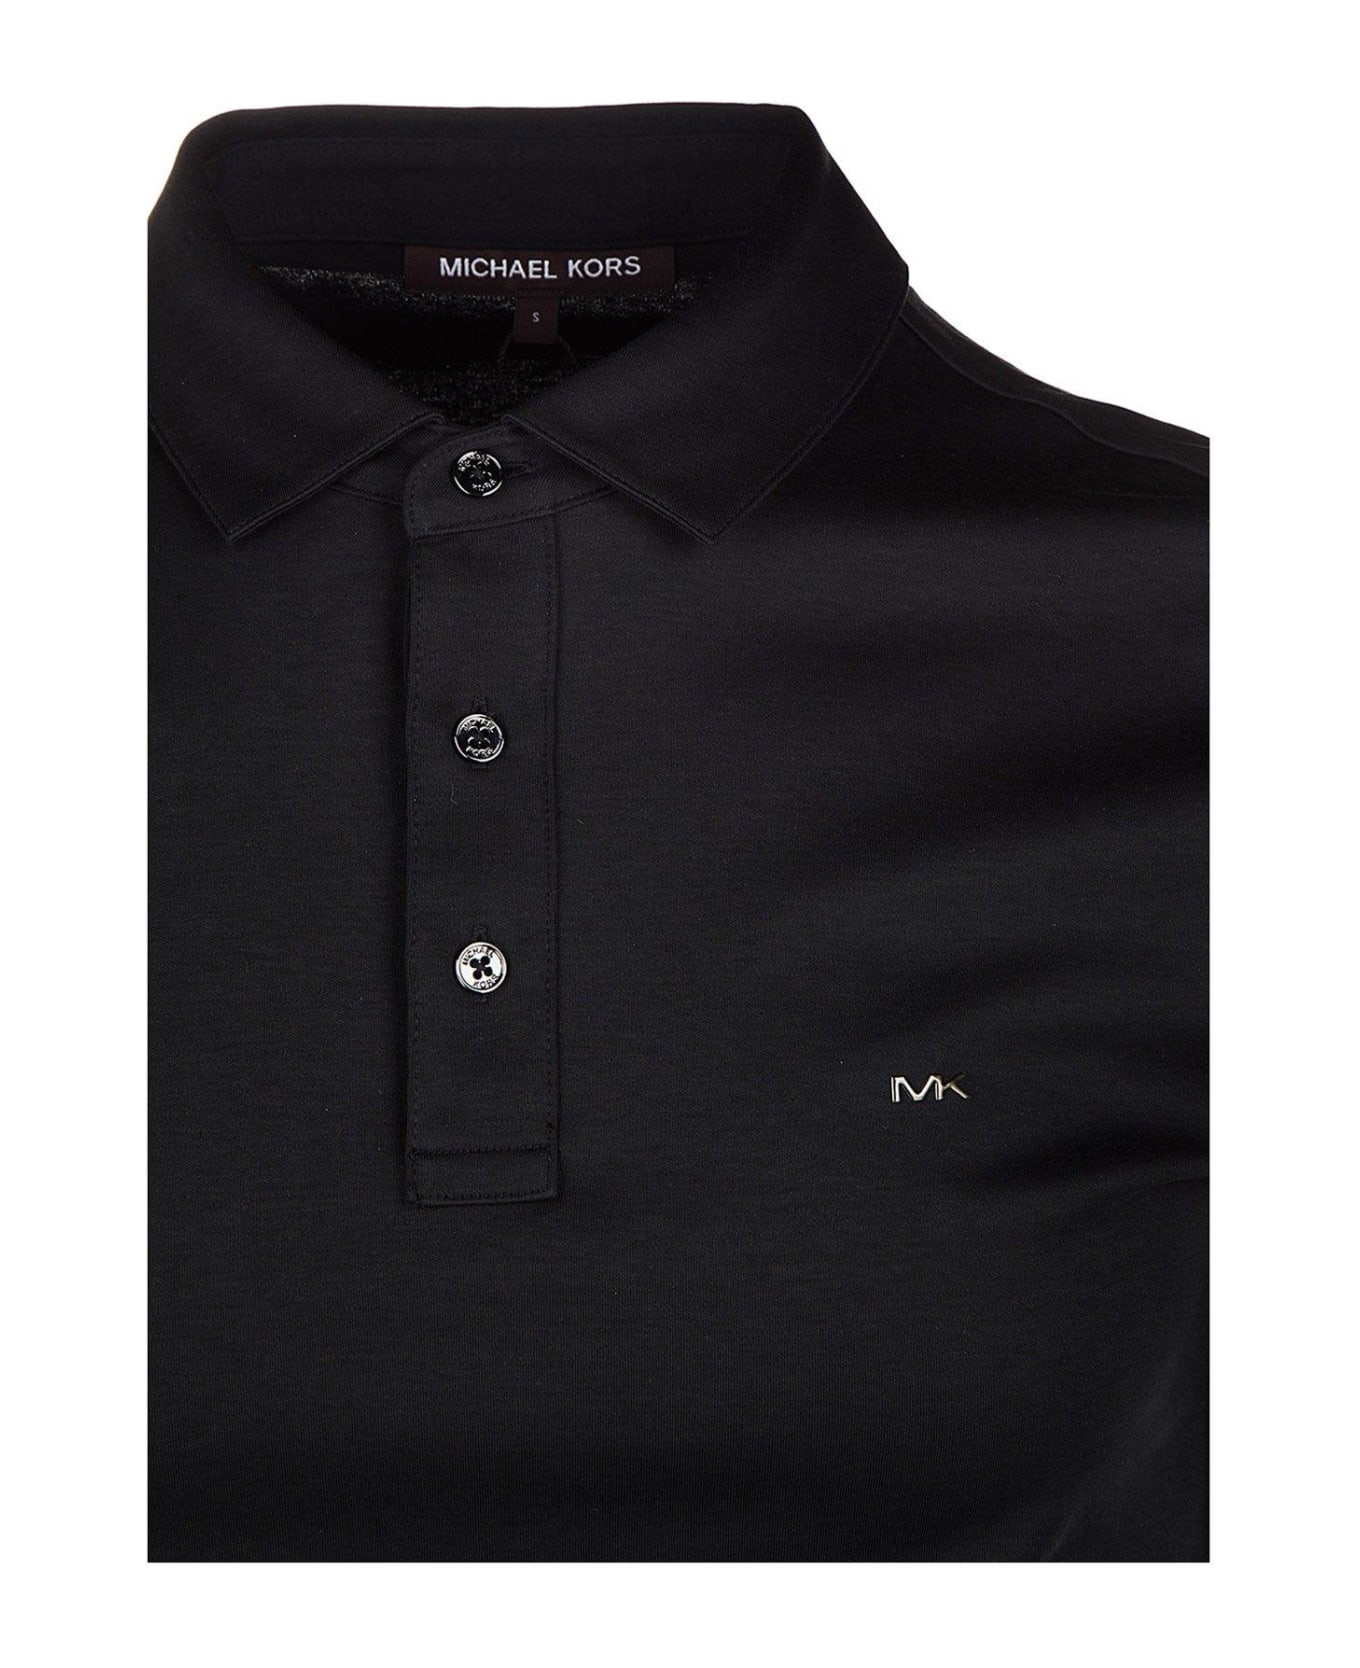 Michael Kors Sleek Polo Shirt - Black ポロシャツ